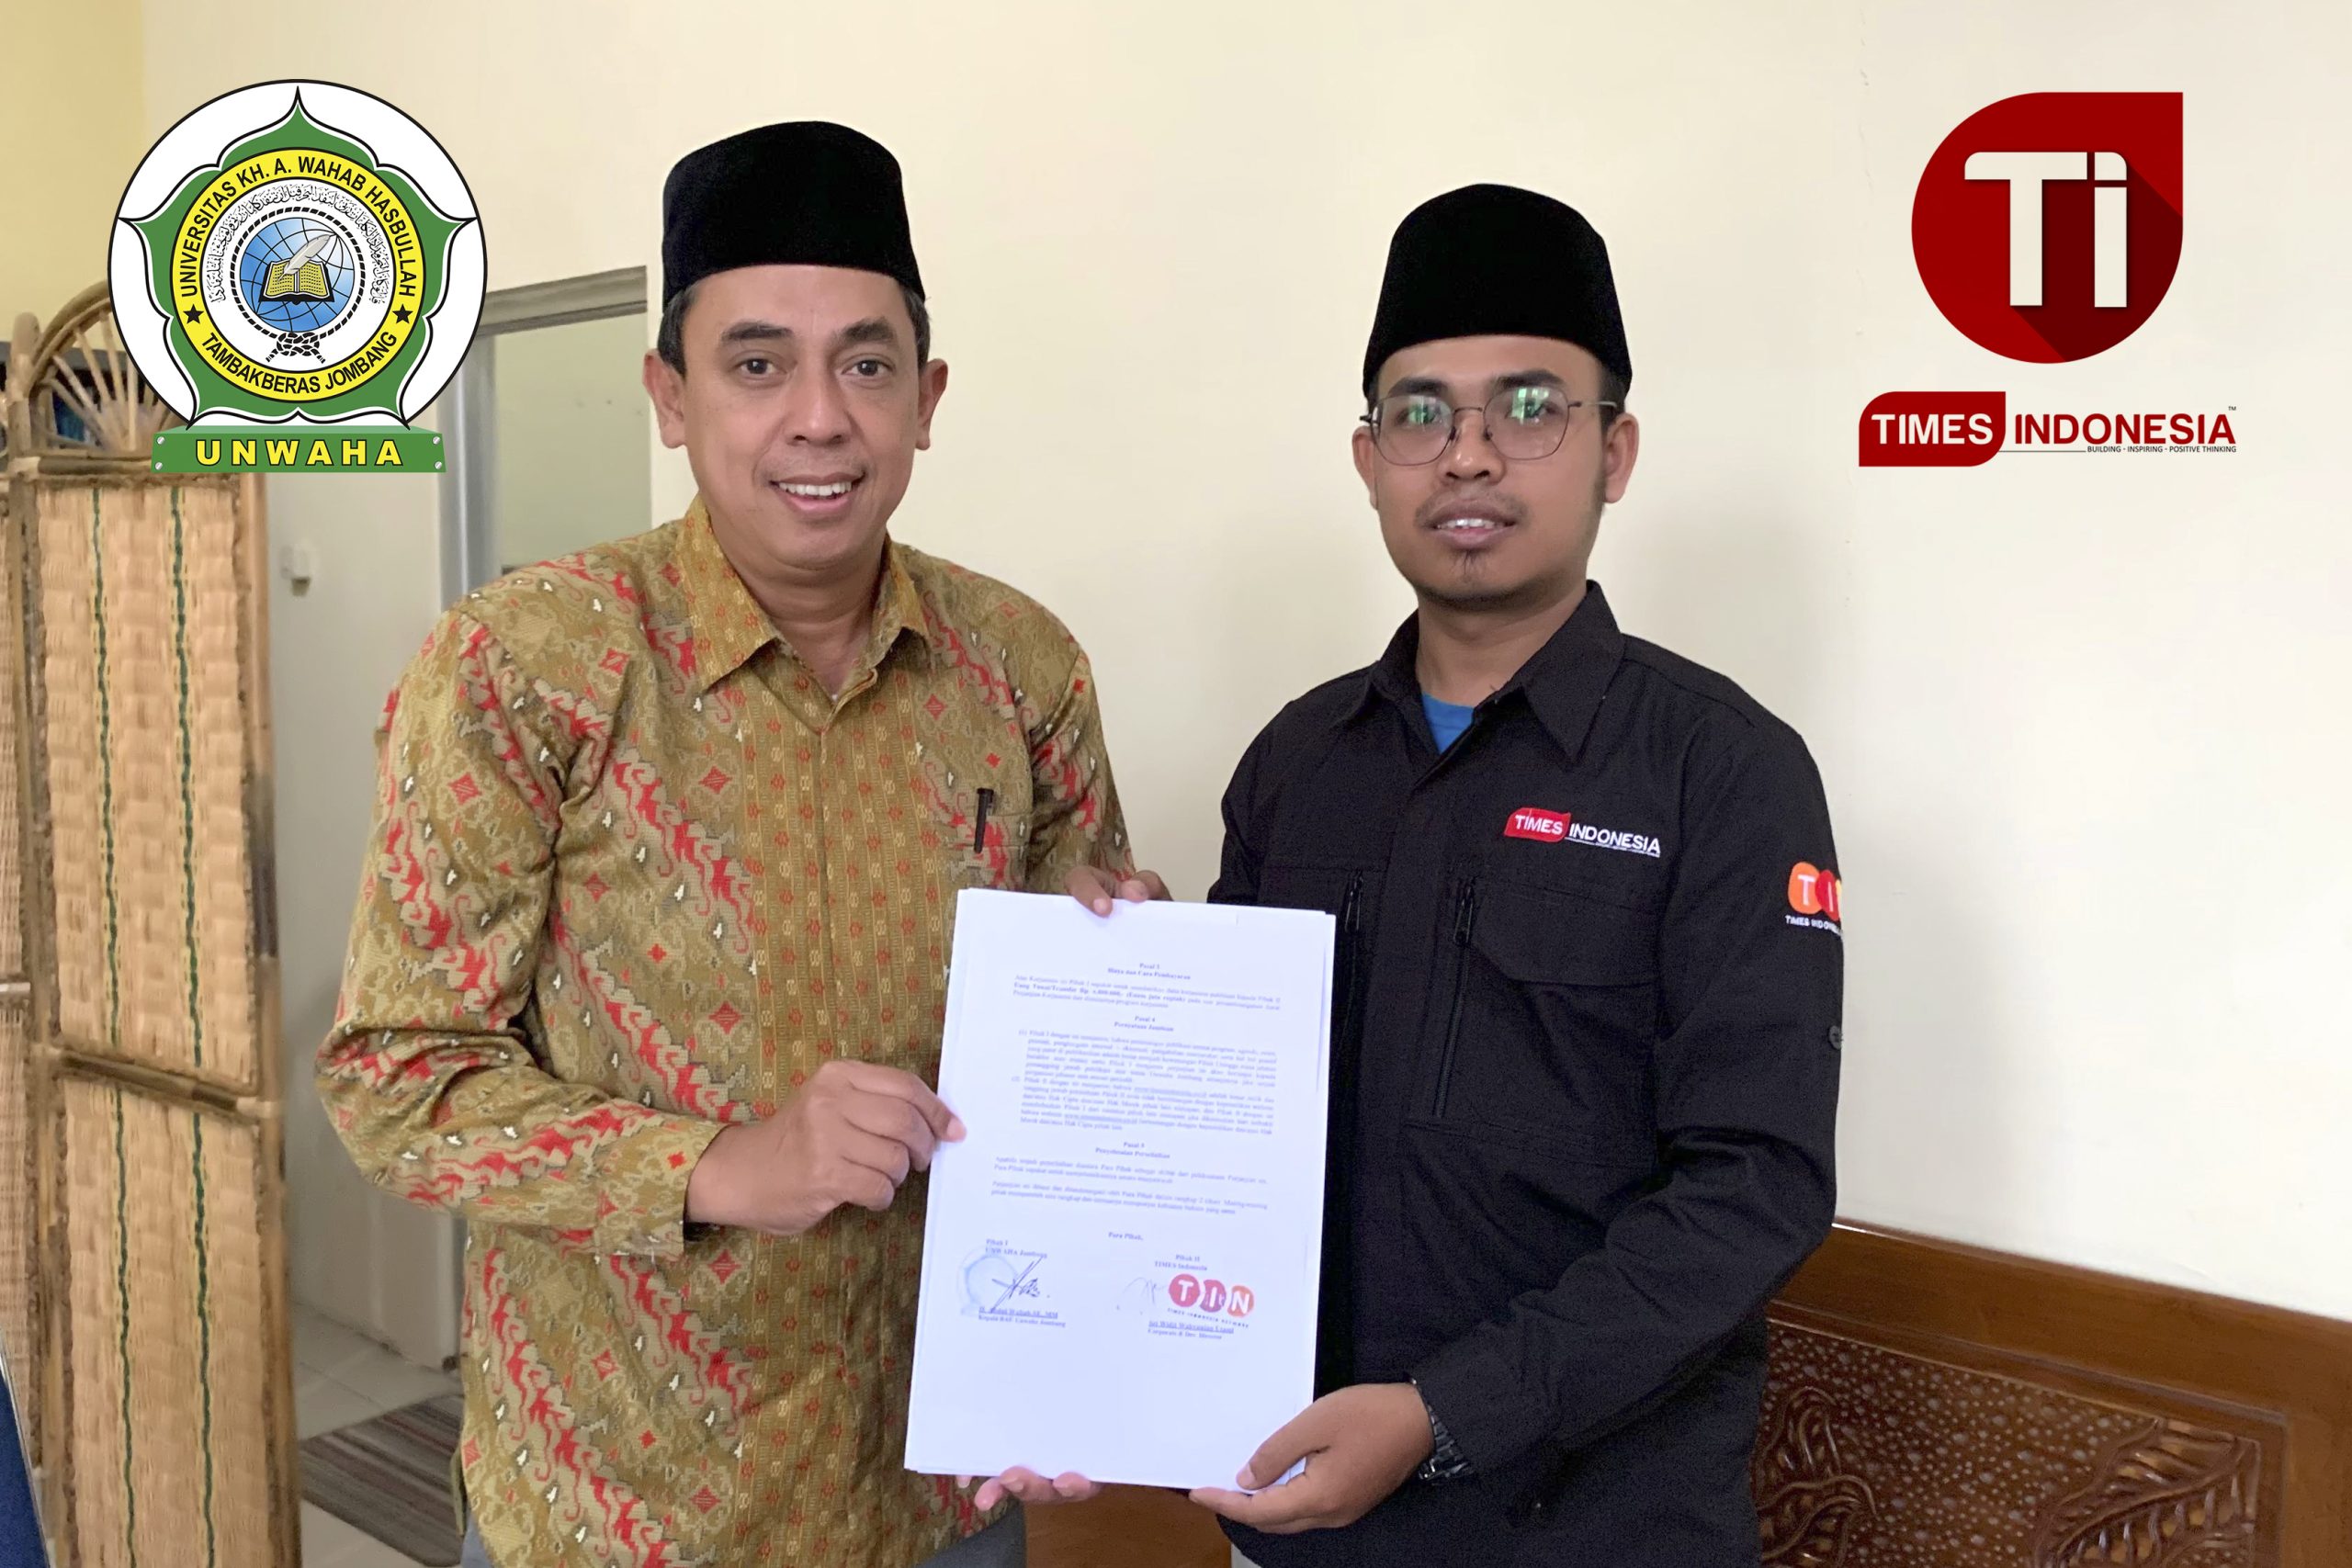 Abdul Wahab Kepala BAU dan perwakilan dari Media TIMES Indonesia yakni Rohmadi Kepala Biro Jombang